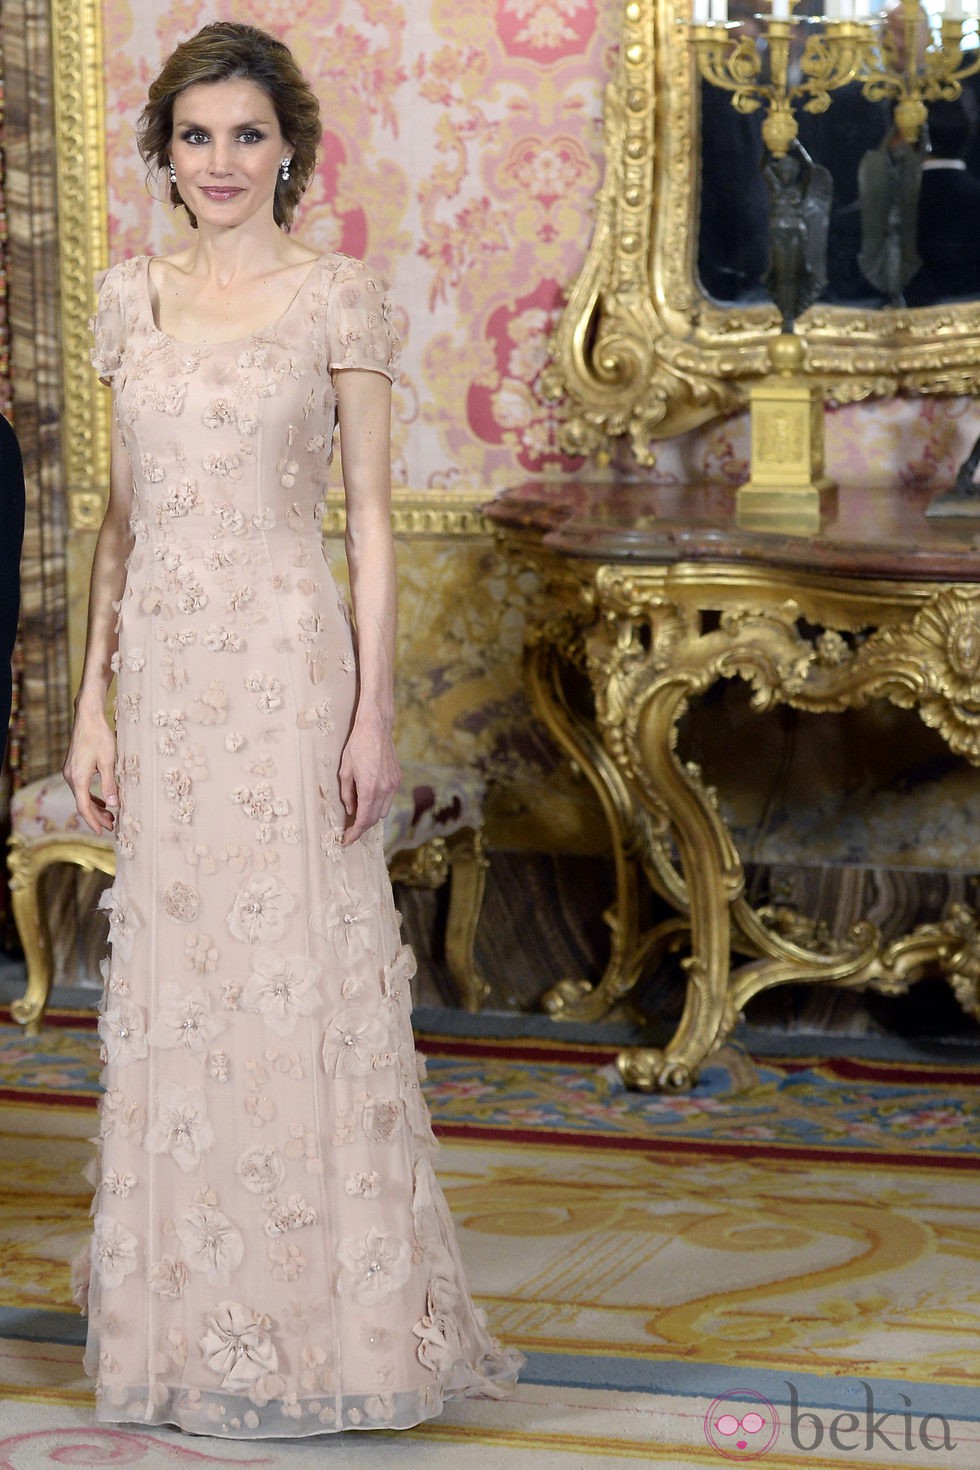 La Princesa Letizia con un vestido rosa empolvado con aplicaciones florales de tela